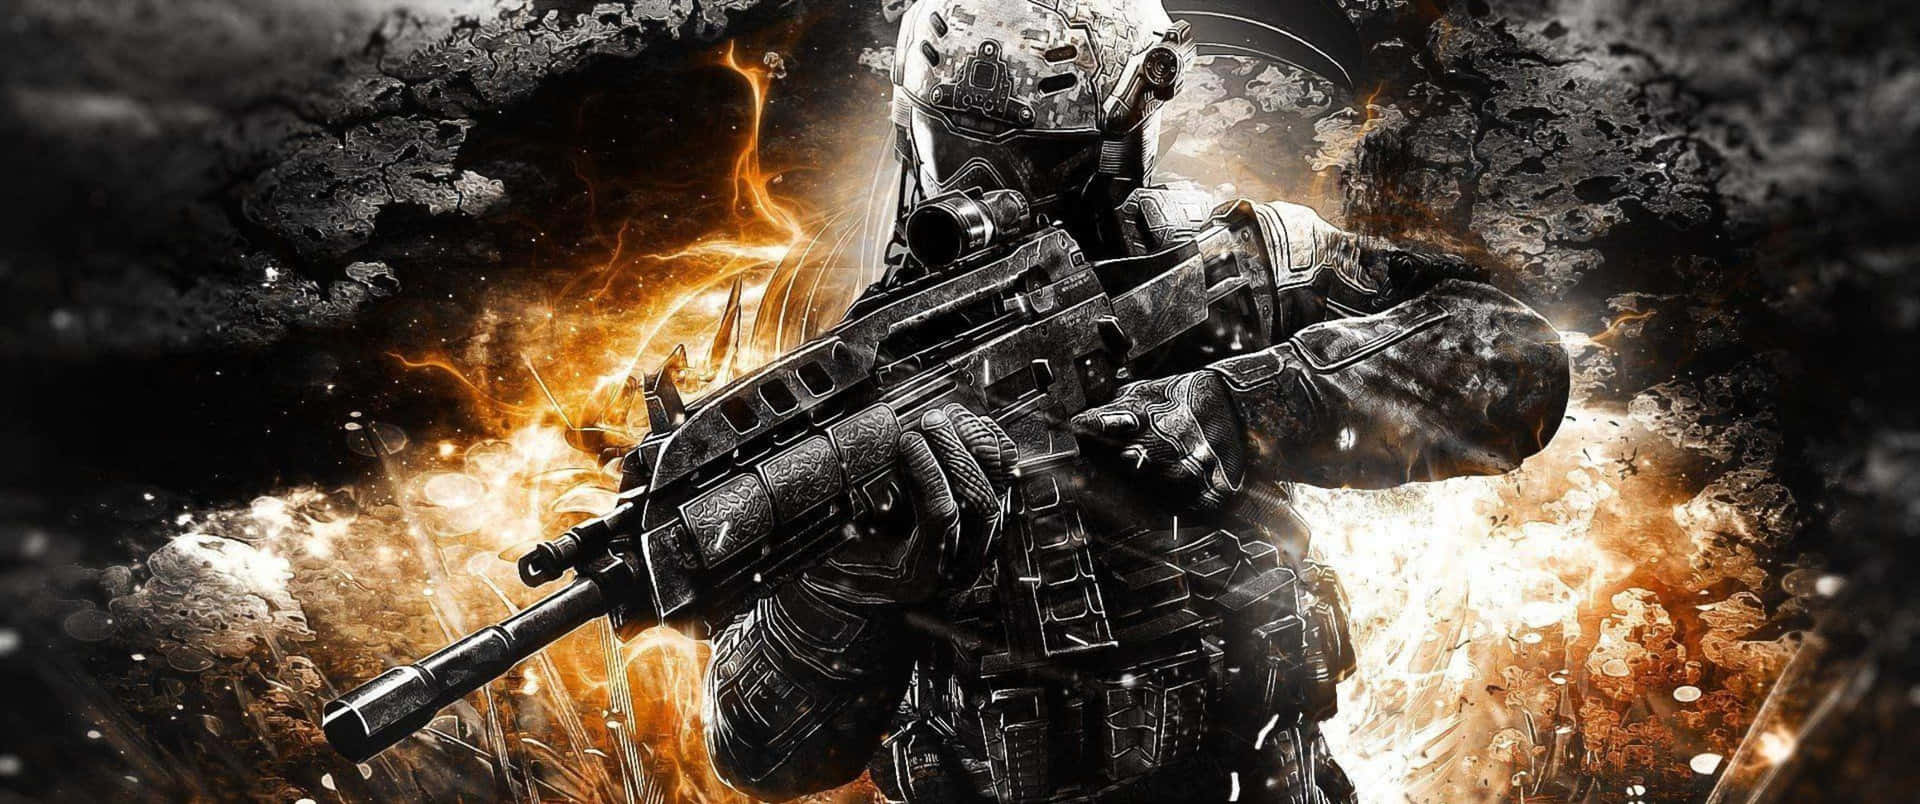 Luchatu Camino En Call Of Duty: Black Ops 4: Experimenta Un Nuevo Nivel De Intensidad.